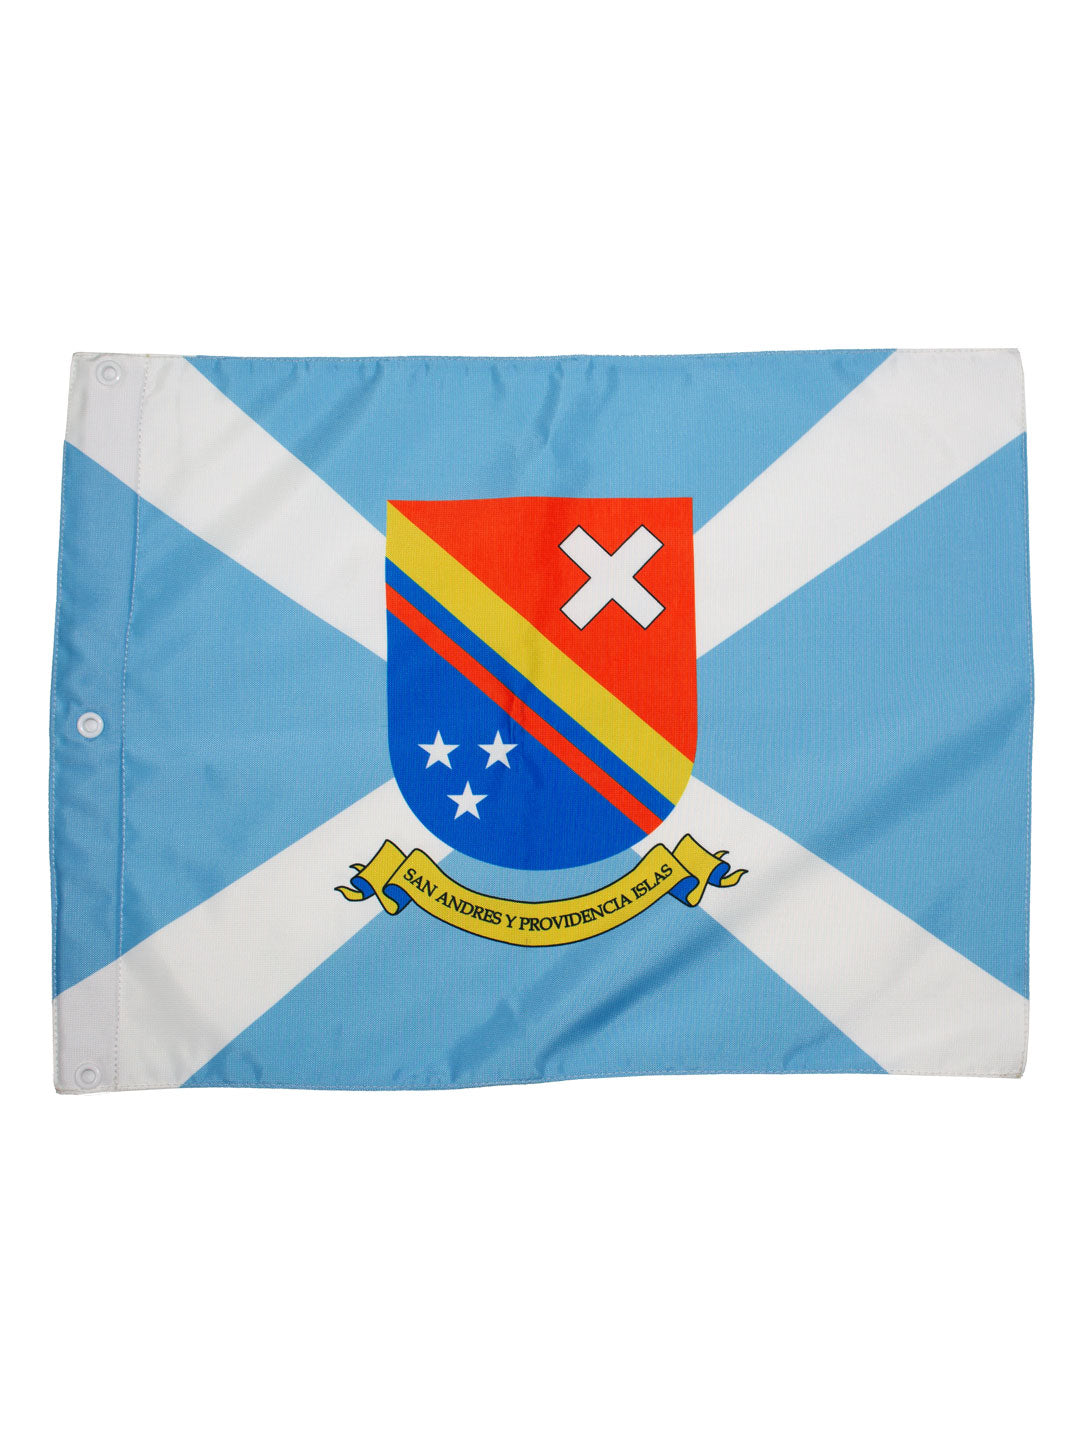 Bandera Marítima San Andrés y Providencia